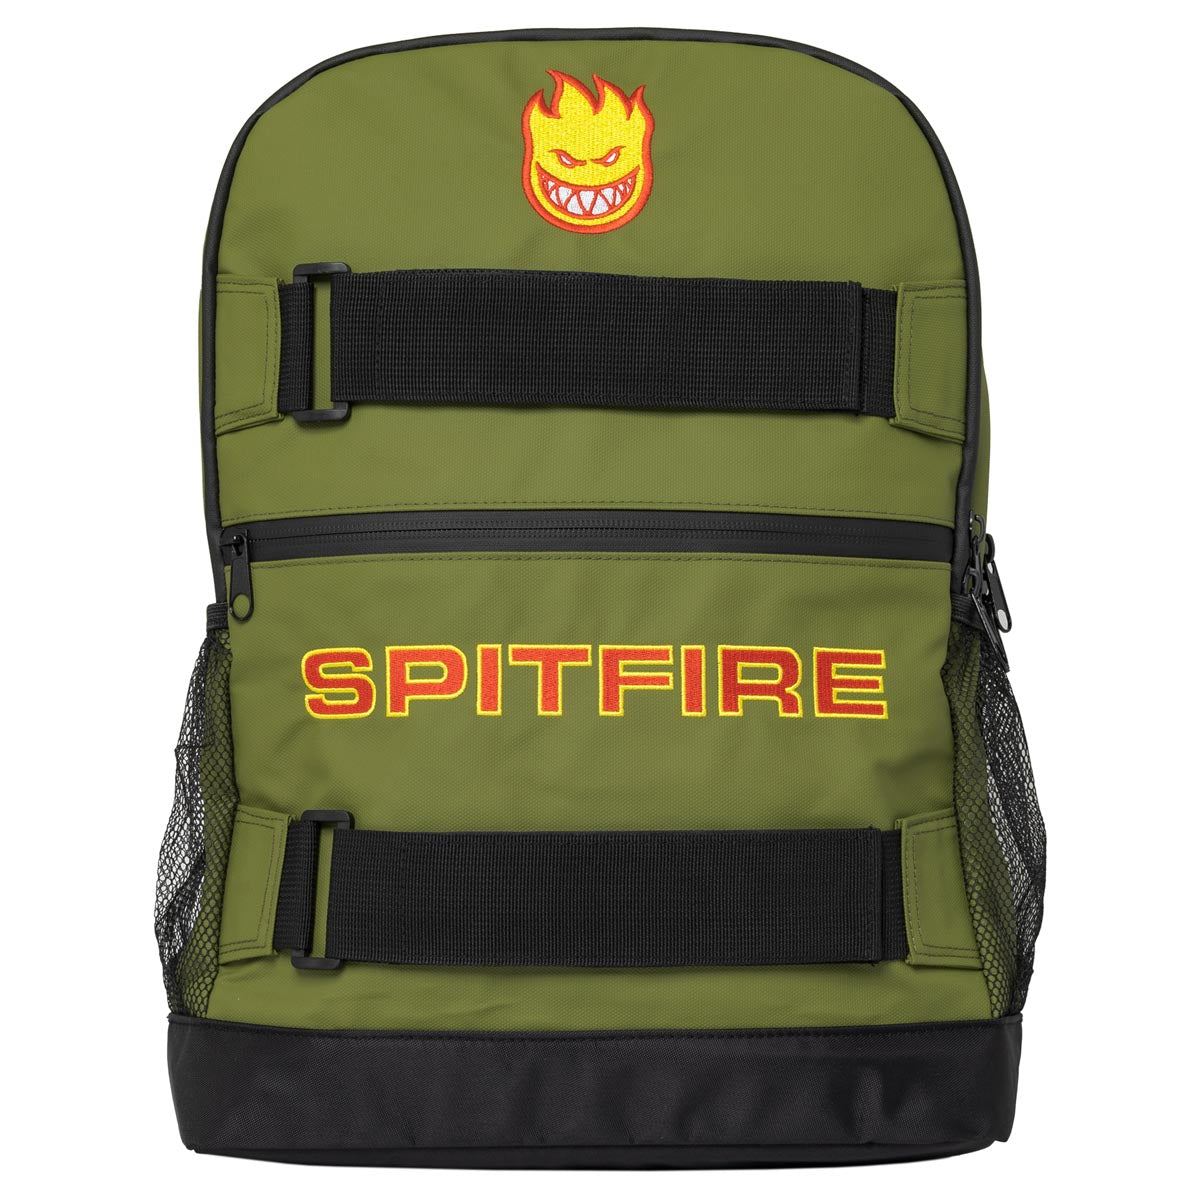 Spitfire Classic 87 Backpack - Olive/Black image 1